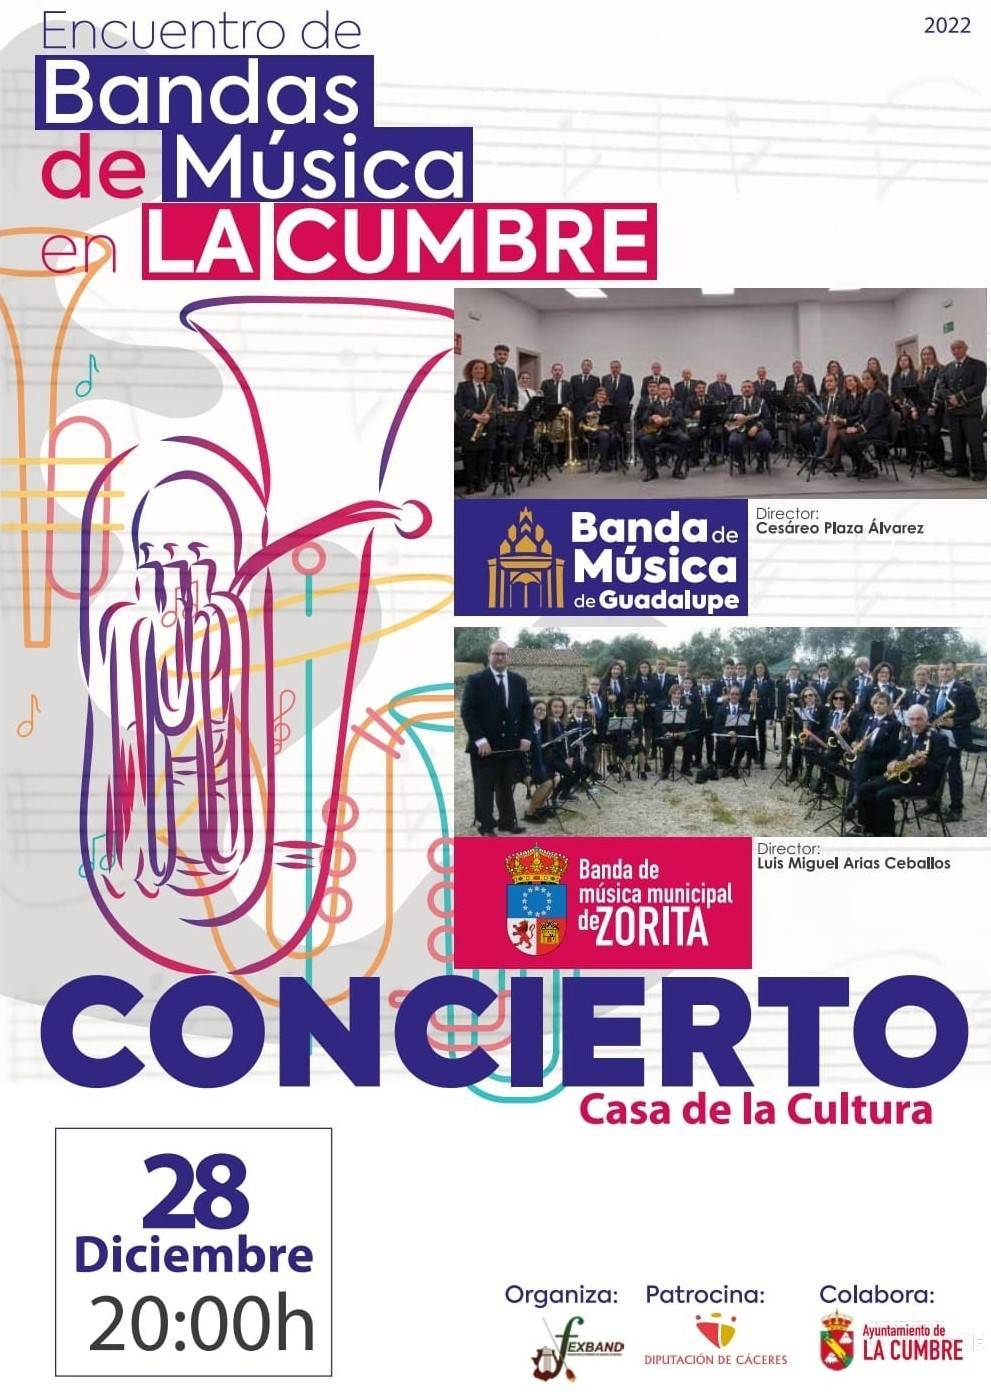 Encuentro de bandas de música (2022) - La Cumbre (Cáceres)